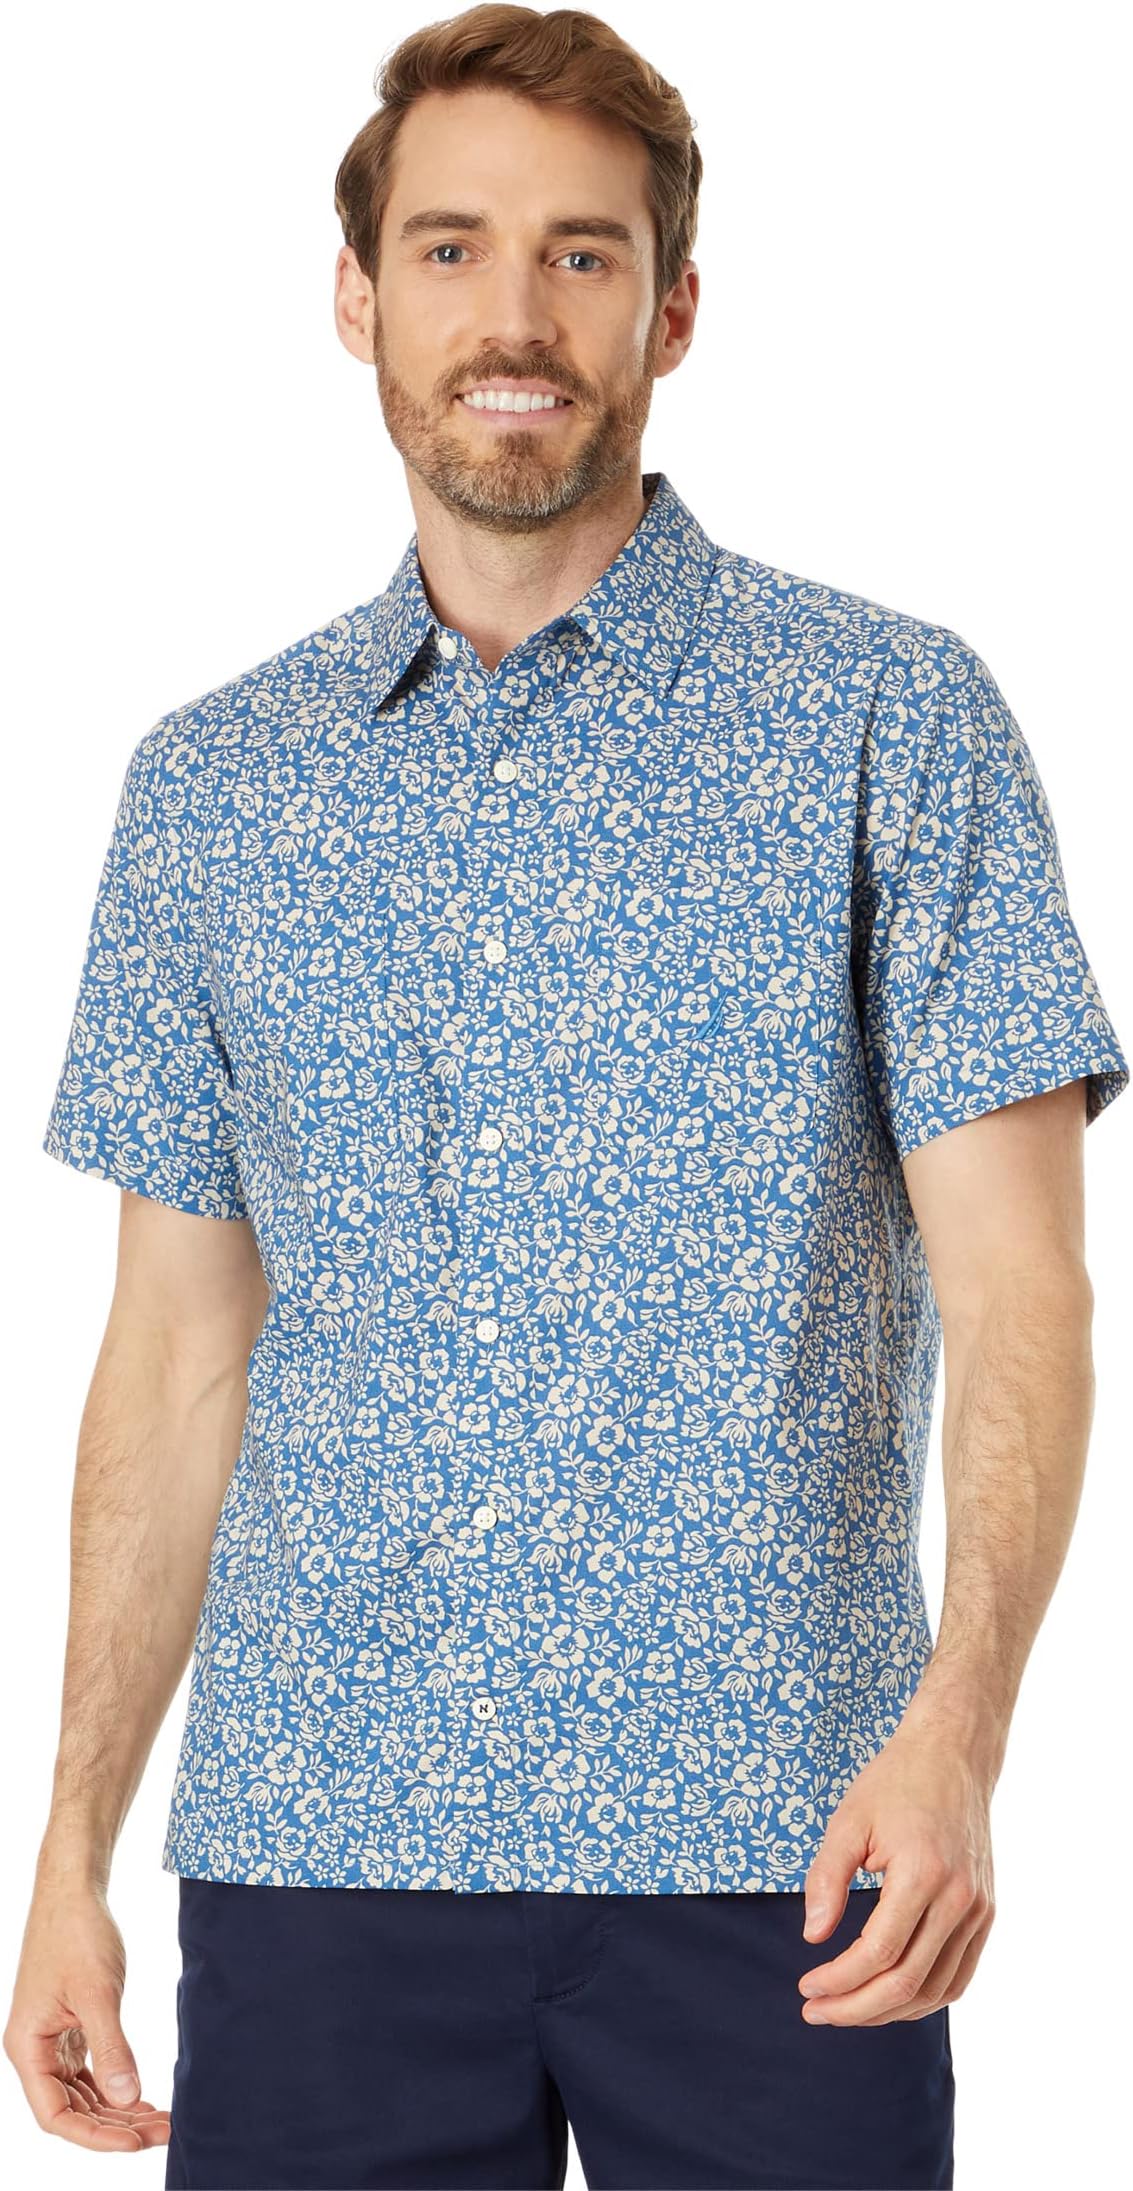 norris barney undercurrent Рубашка с коротким рукавом с принтом, изготовленная из экологически чистых материалов Nautica, цвет Undercurrent